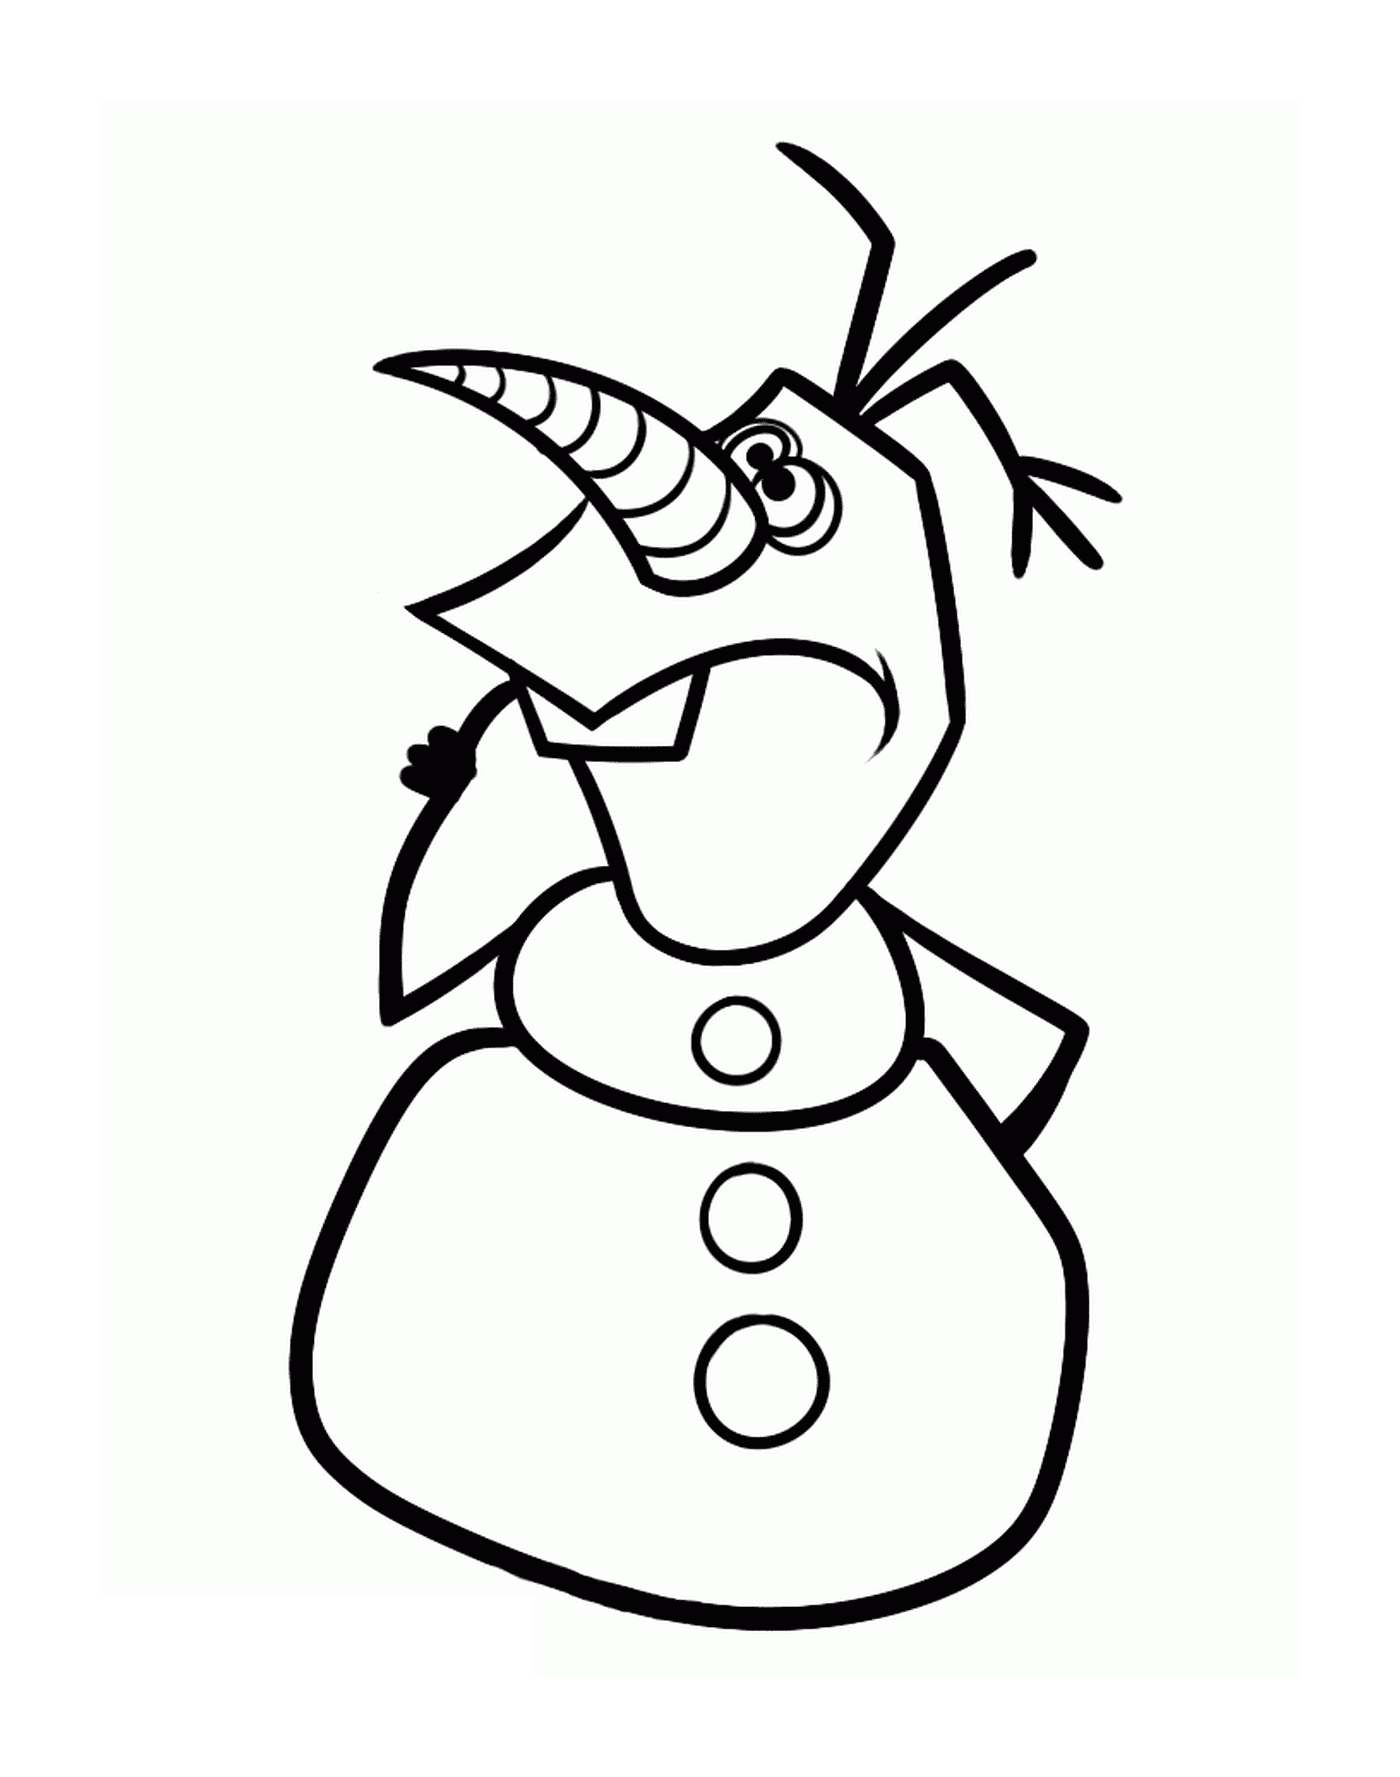  Olaf un po 'malata 